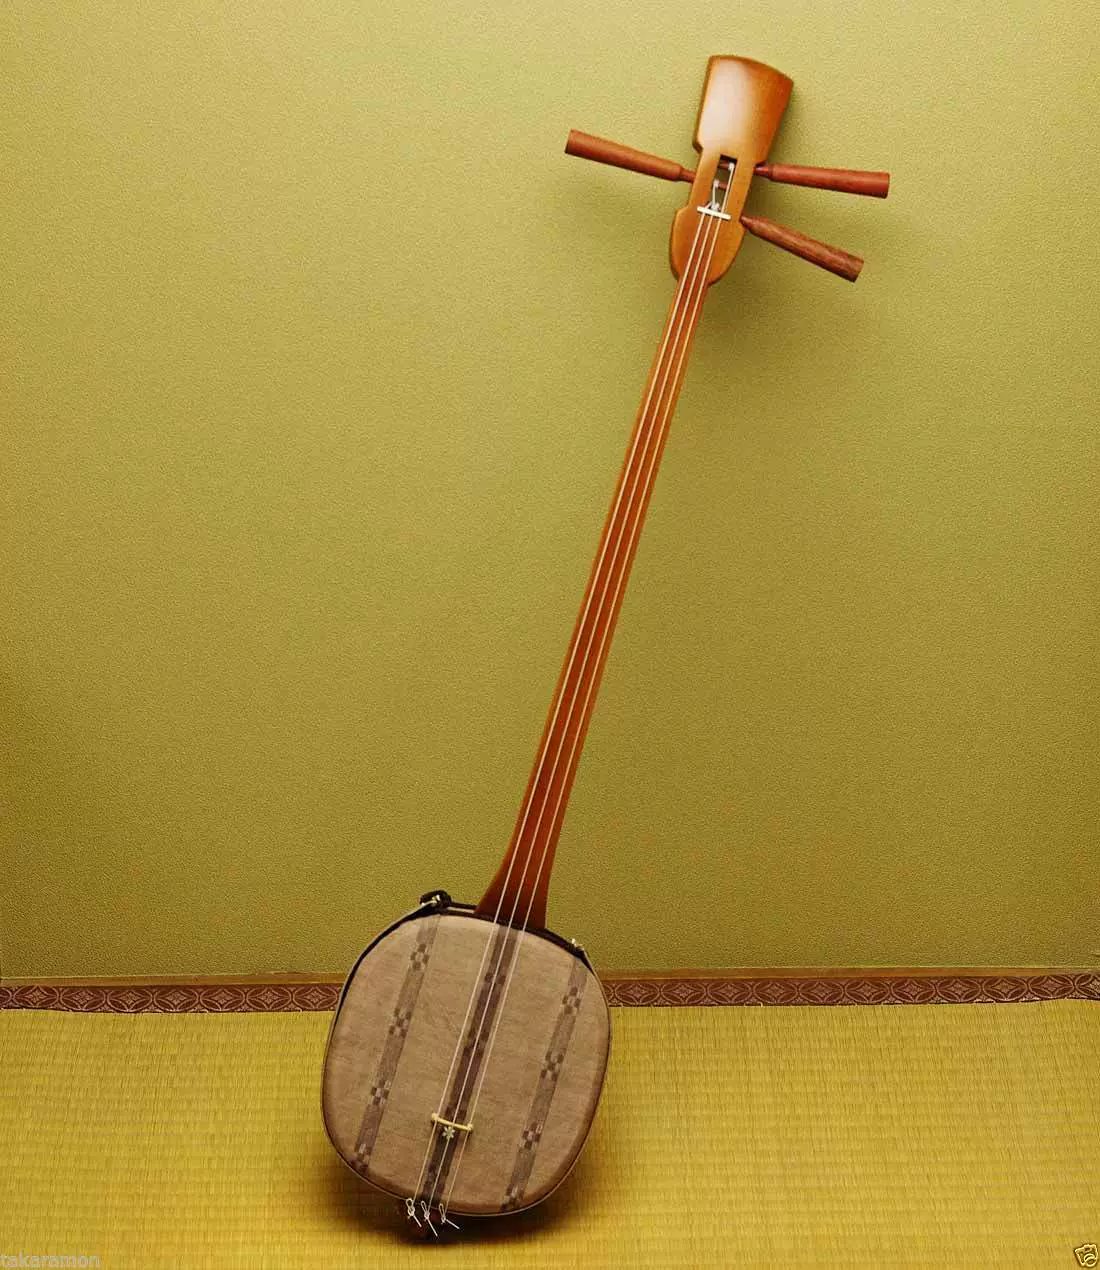 代購日本三味線棕色傳統新木三絃琴沖繩琉球精緻製作經典絃樂器